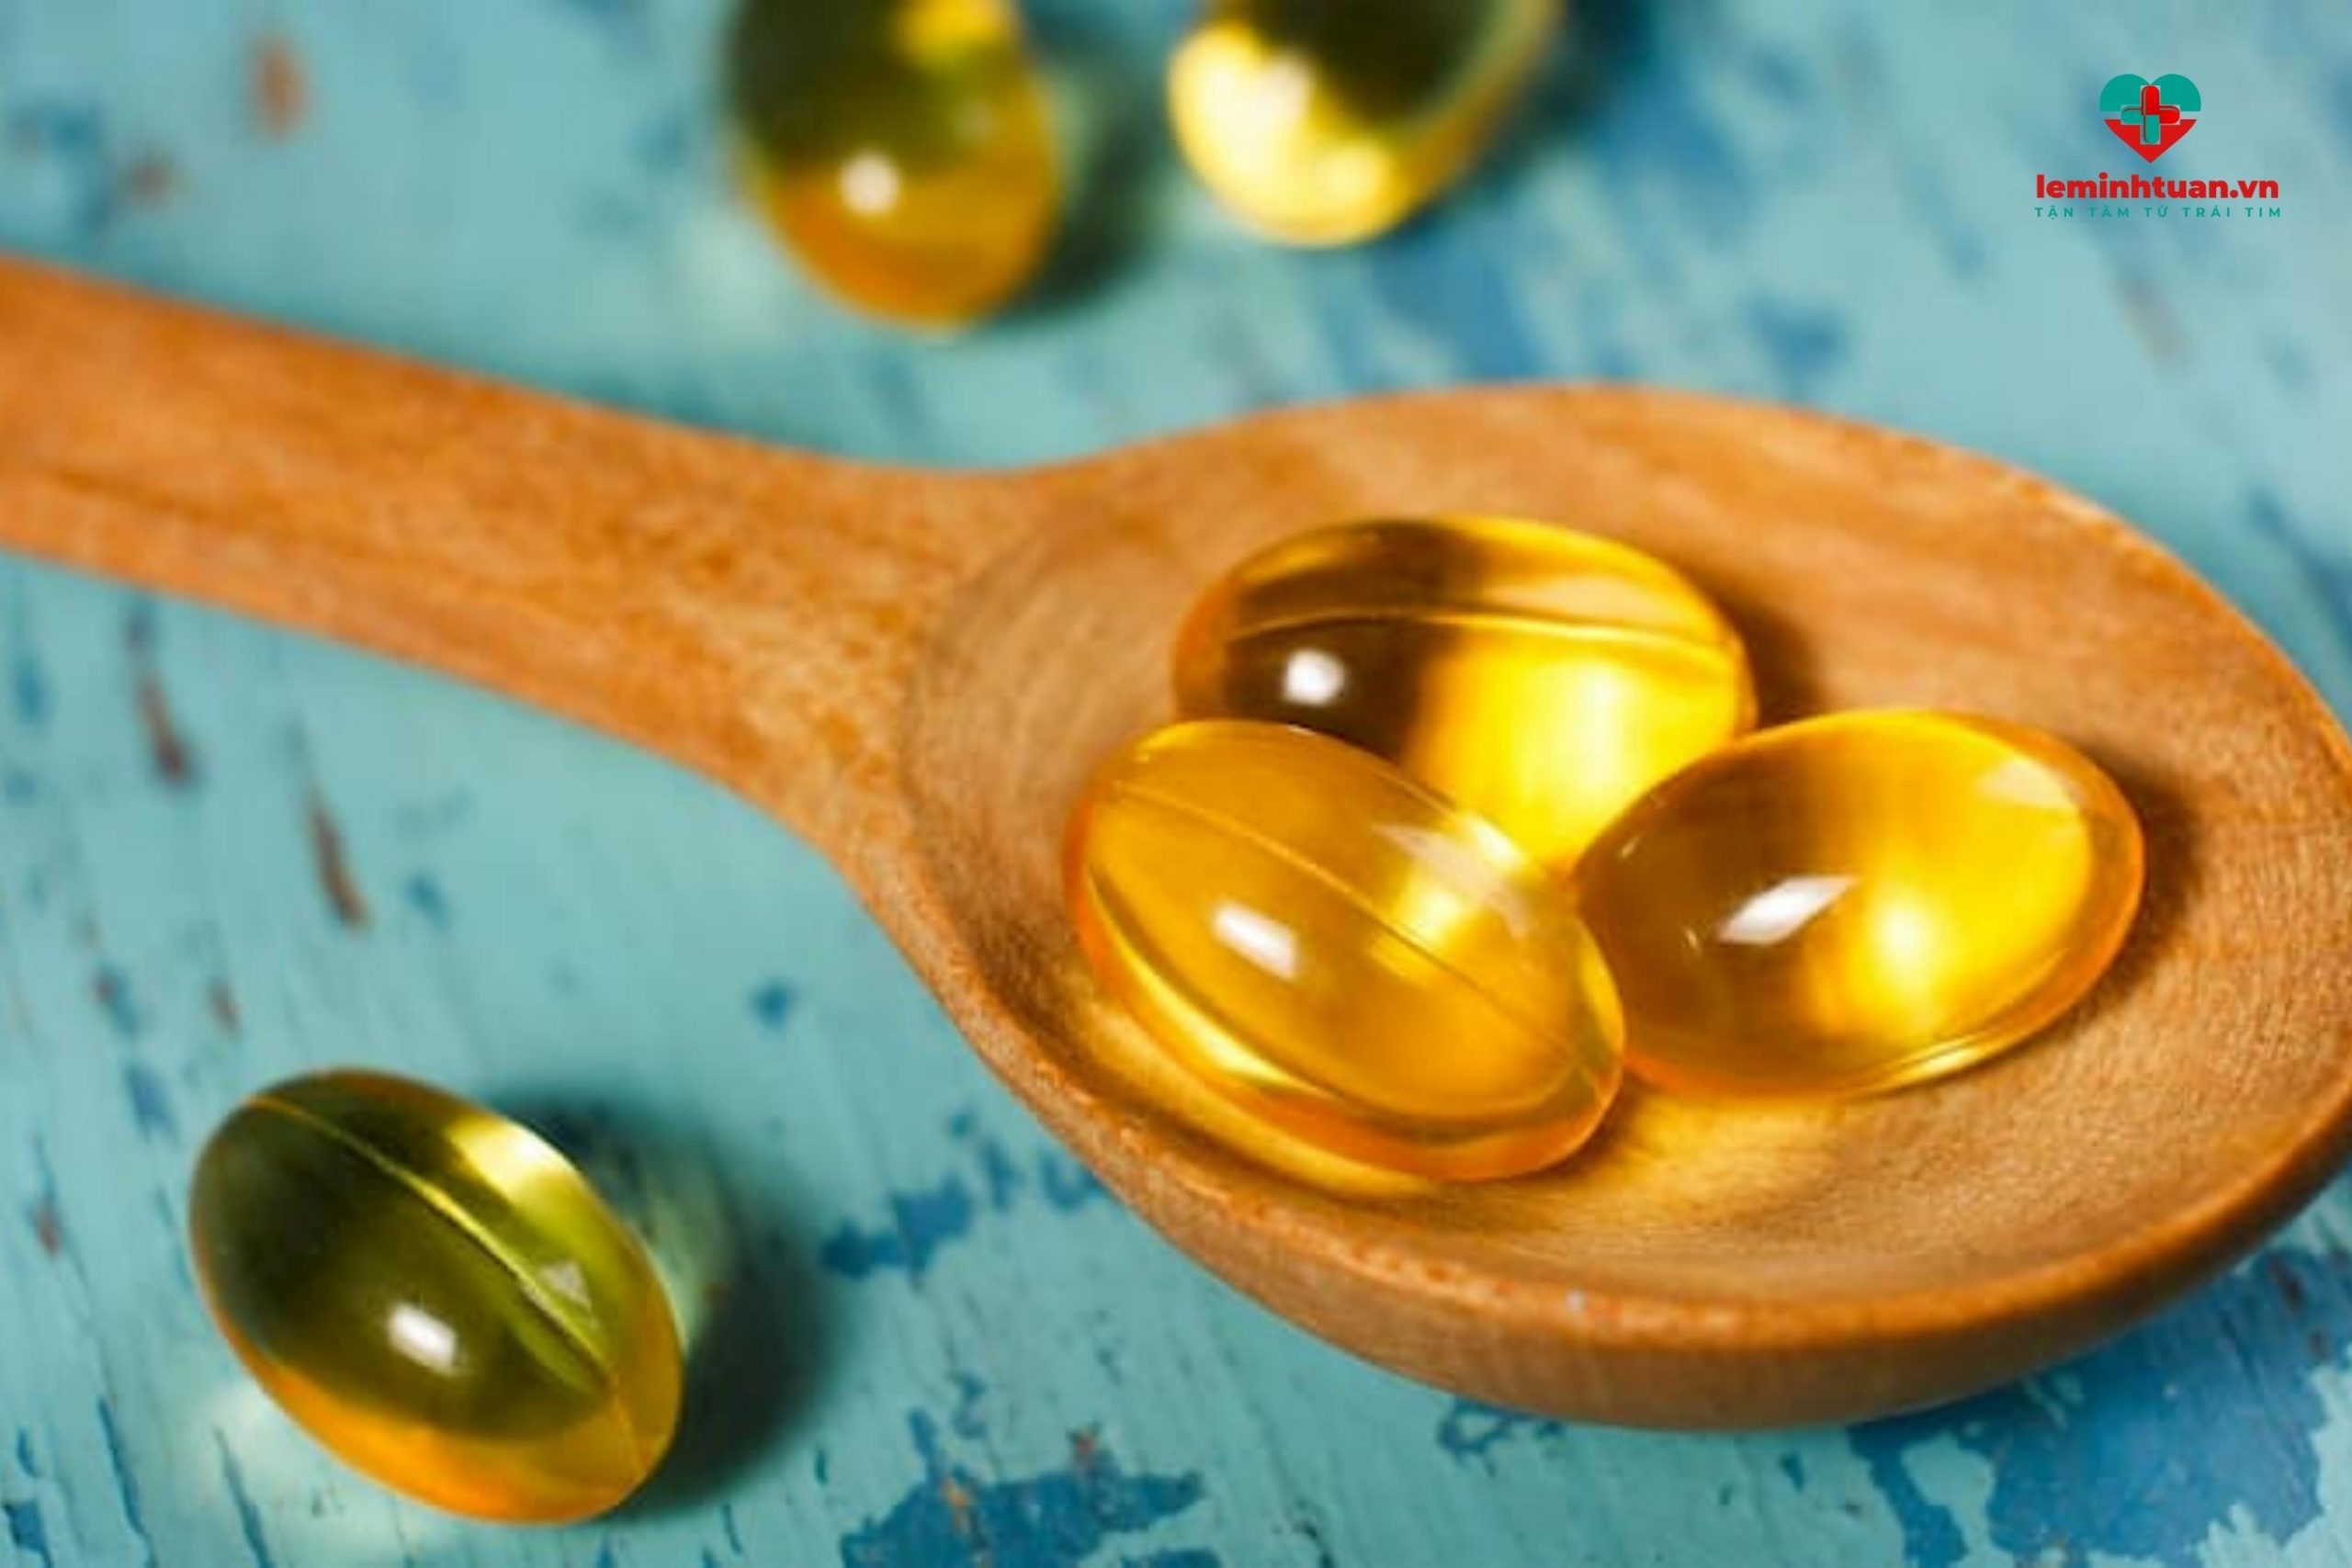 Bổ sung vitamin D3 cho trẻ trên 1 tuổi từ những nguồn nào?